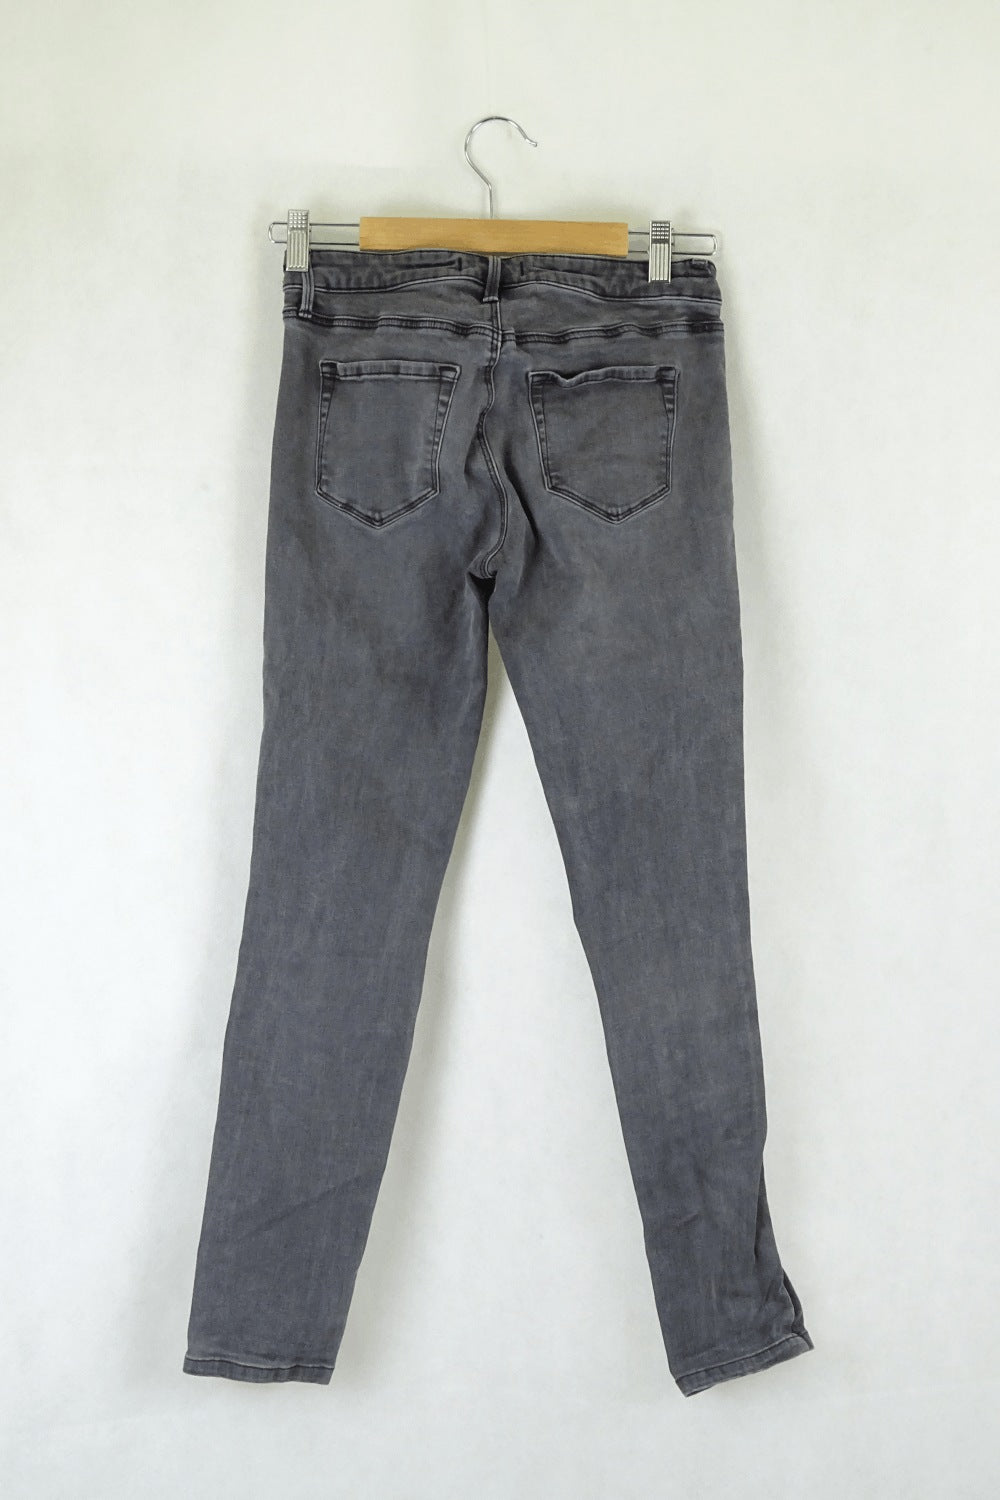 Uniqlo Grey Jeans S